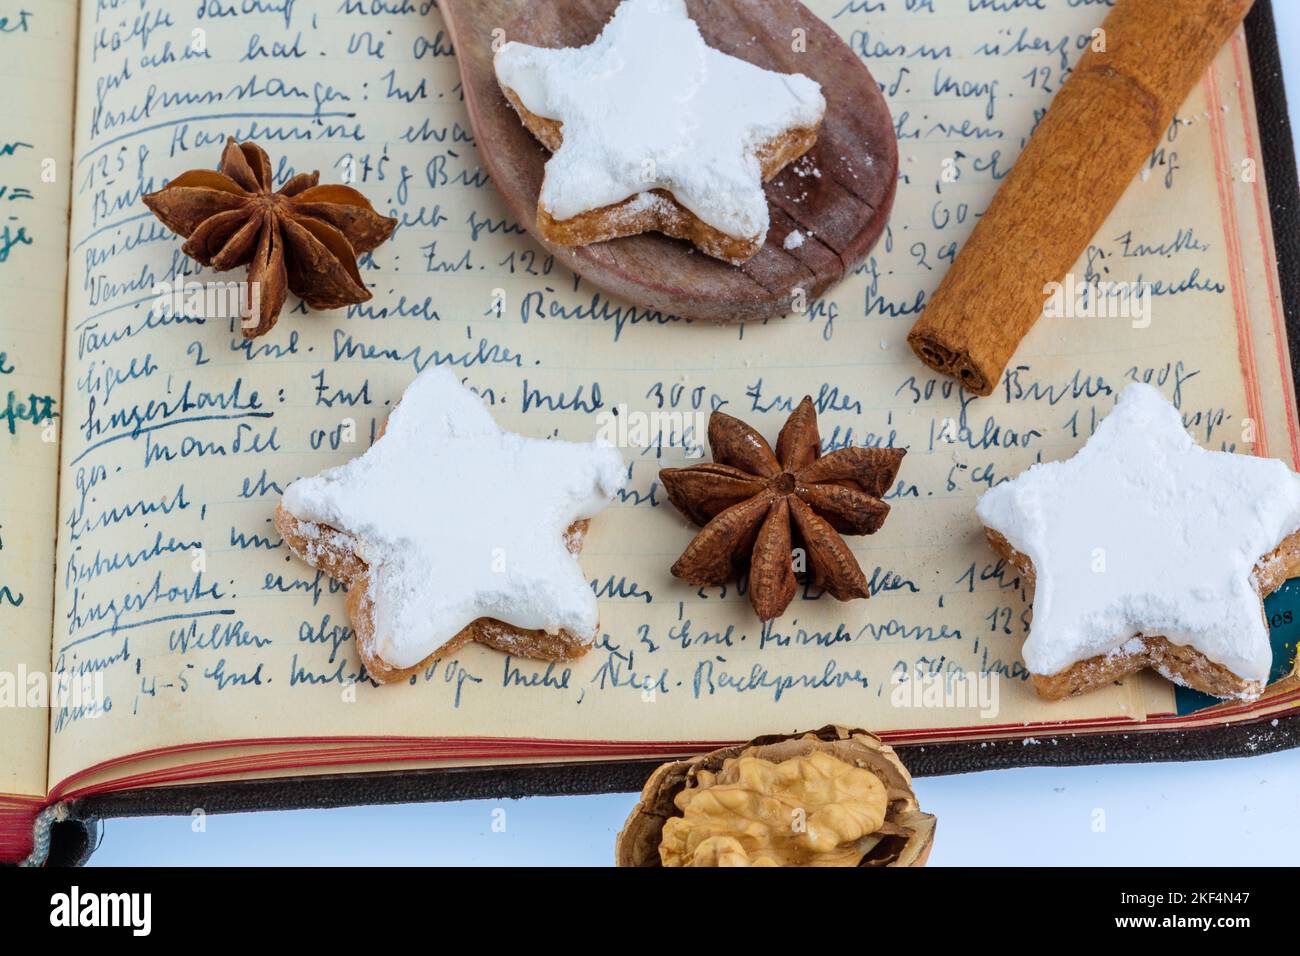 Weihnachtsbäckerei, Zutaten für Kekse und Plätzchen, die zu Weihnachten gebacken werden, Rezeptbuch, Omas Rezepte, Foto Stock